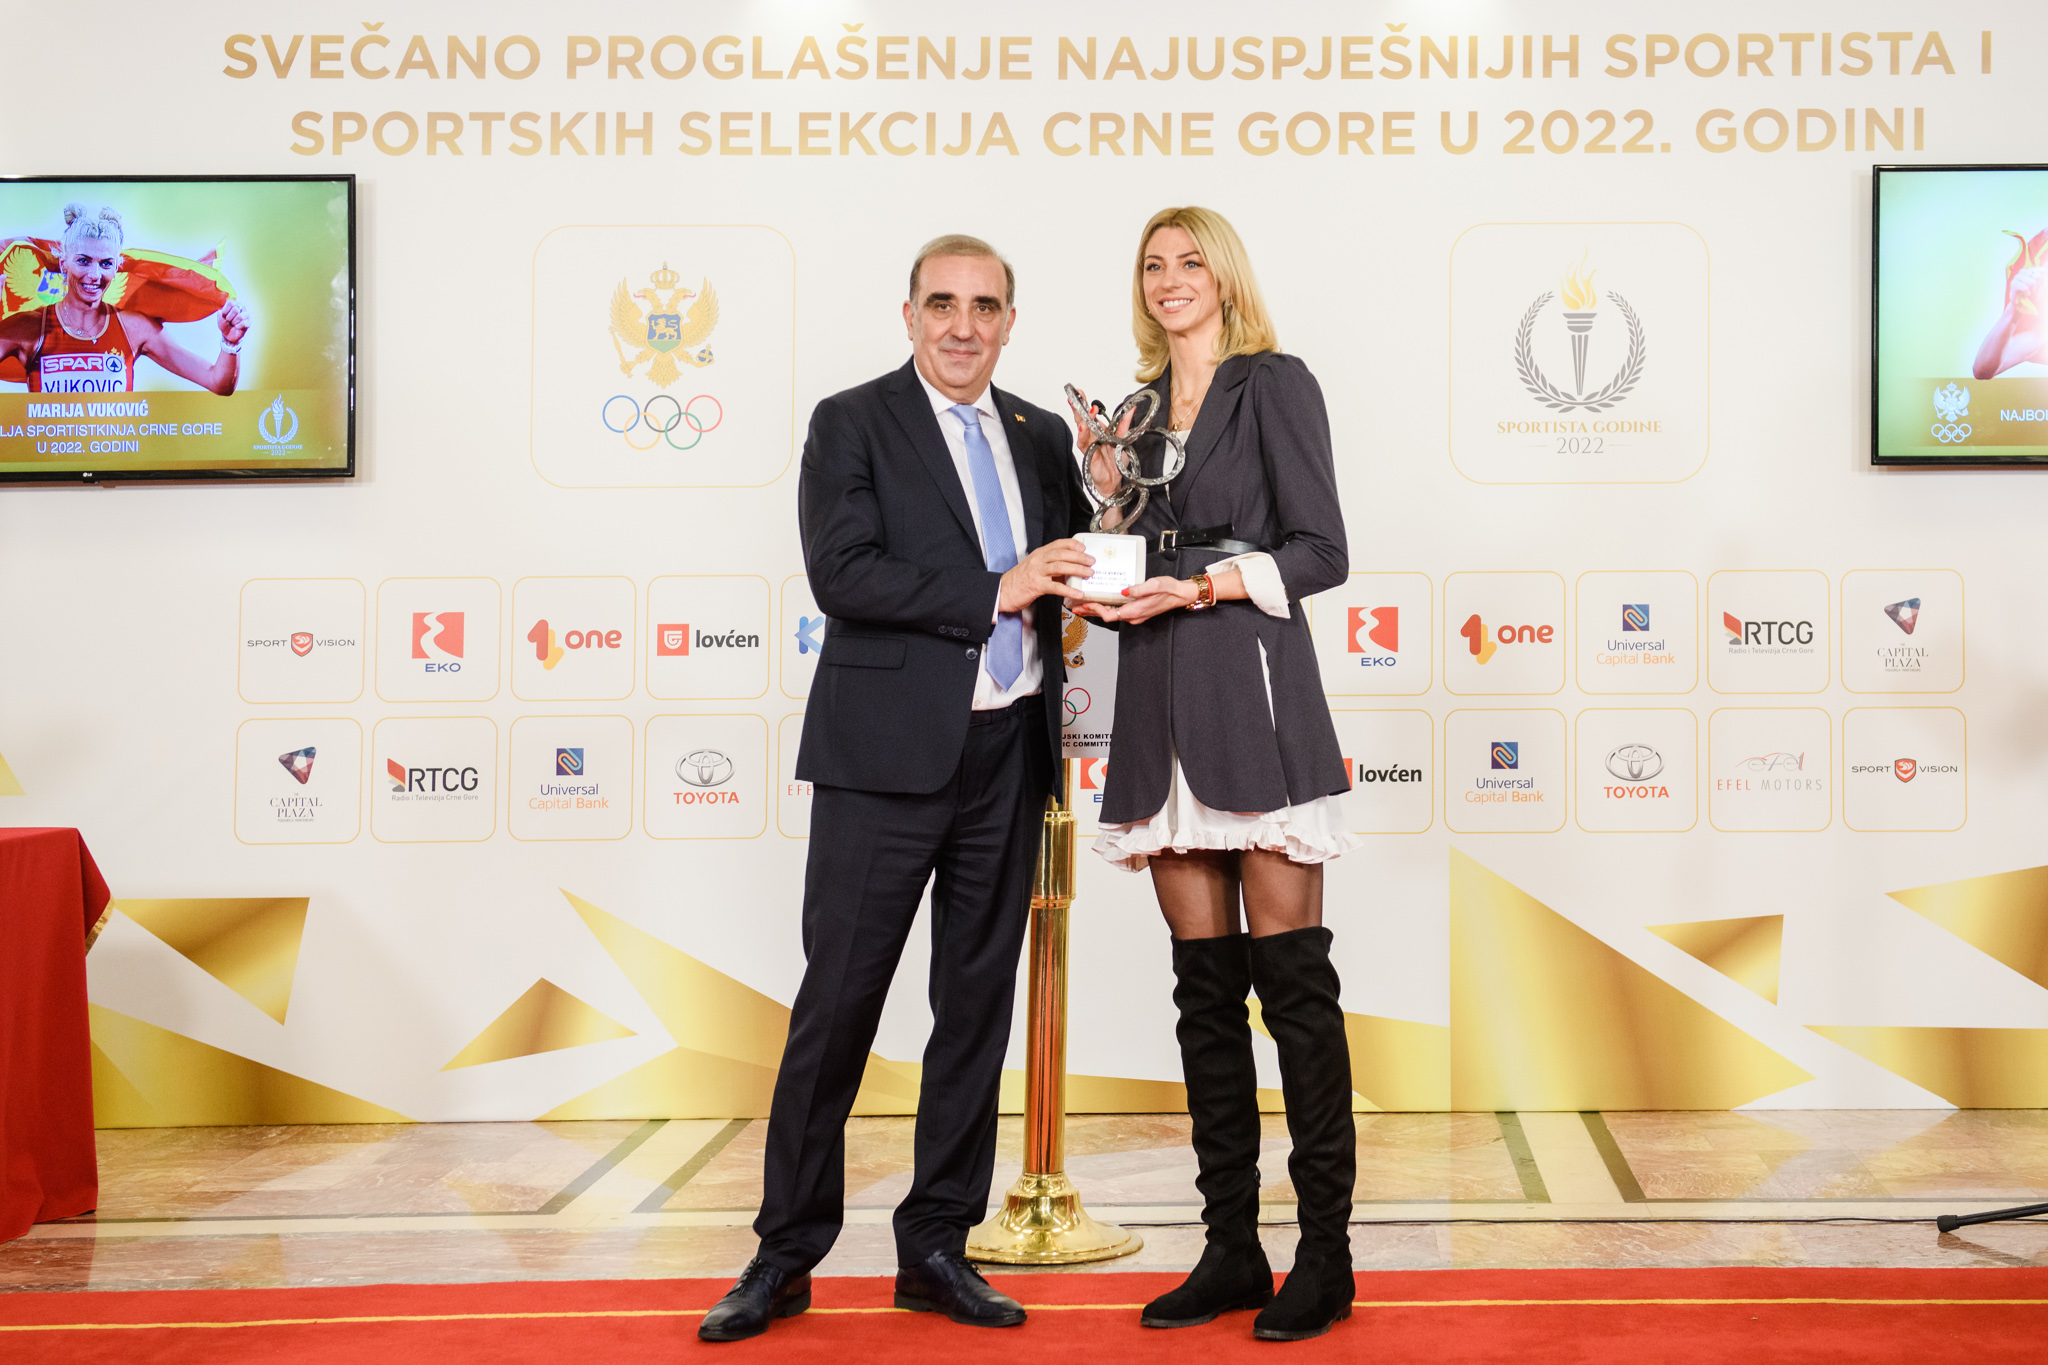 Marija Vuković sportista Crne Gore: Nadam se da ću sljedeće sezone nastaviti tamo gdje sam stala